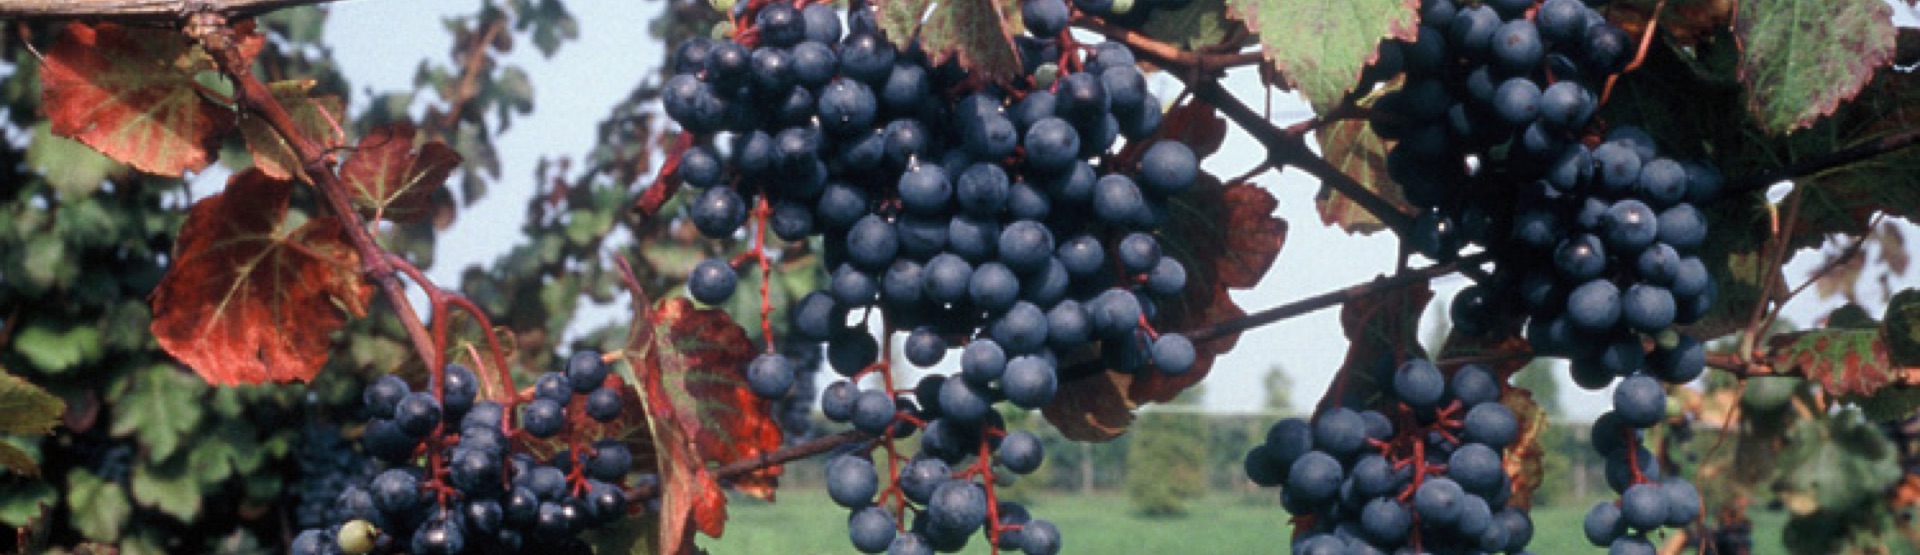 Primo piano grappolo d'uva